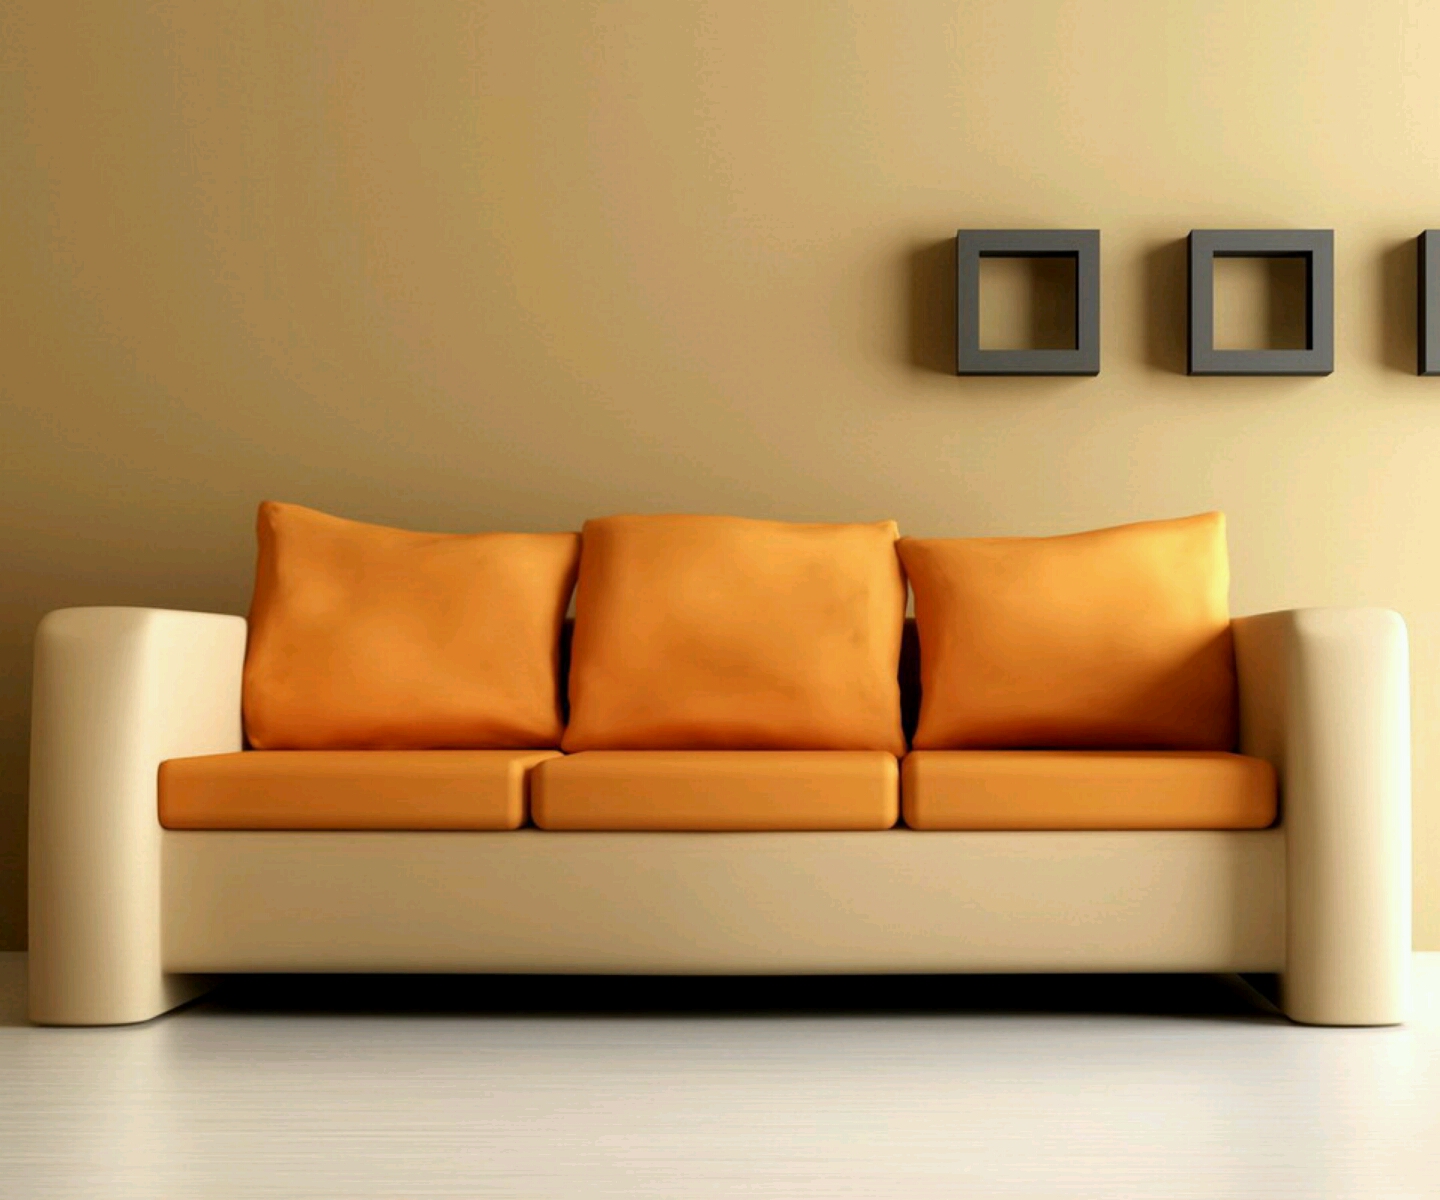 Đóng ghế sofa theo yêu cầu giá rẻ Hà Nội cùng VINACO